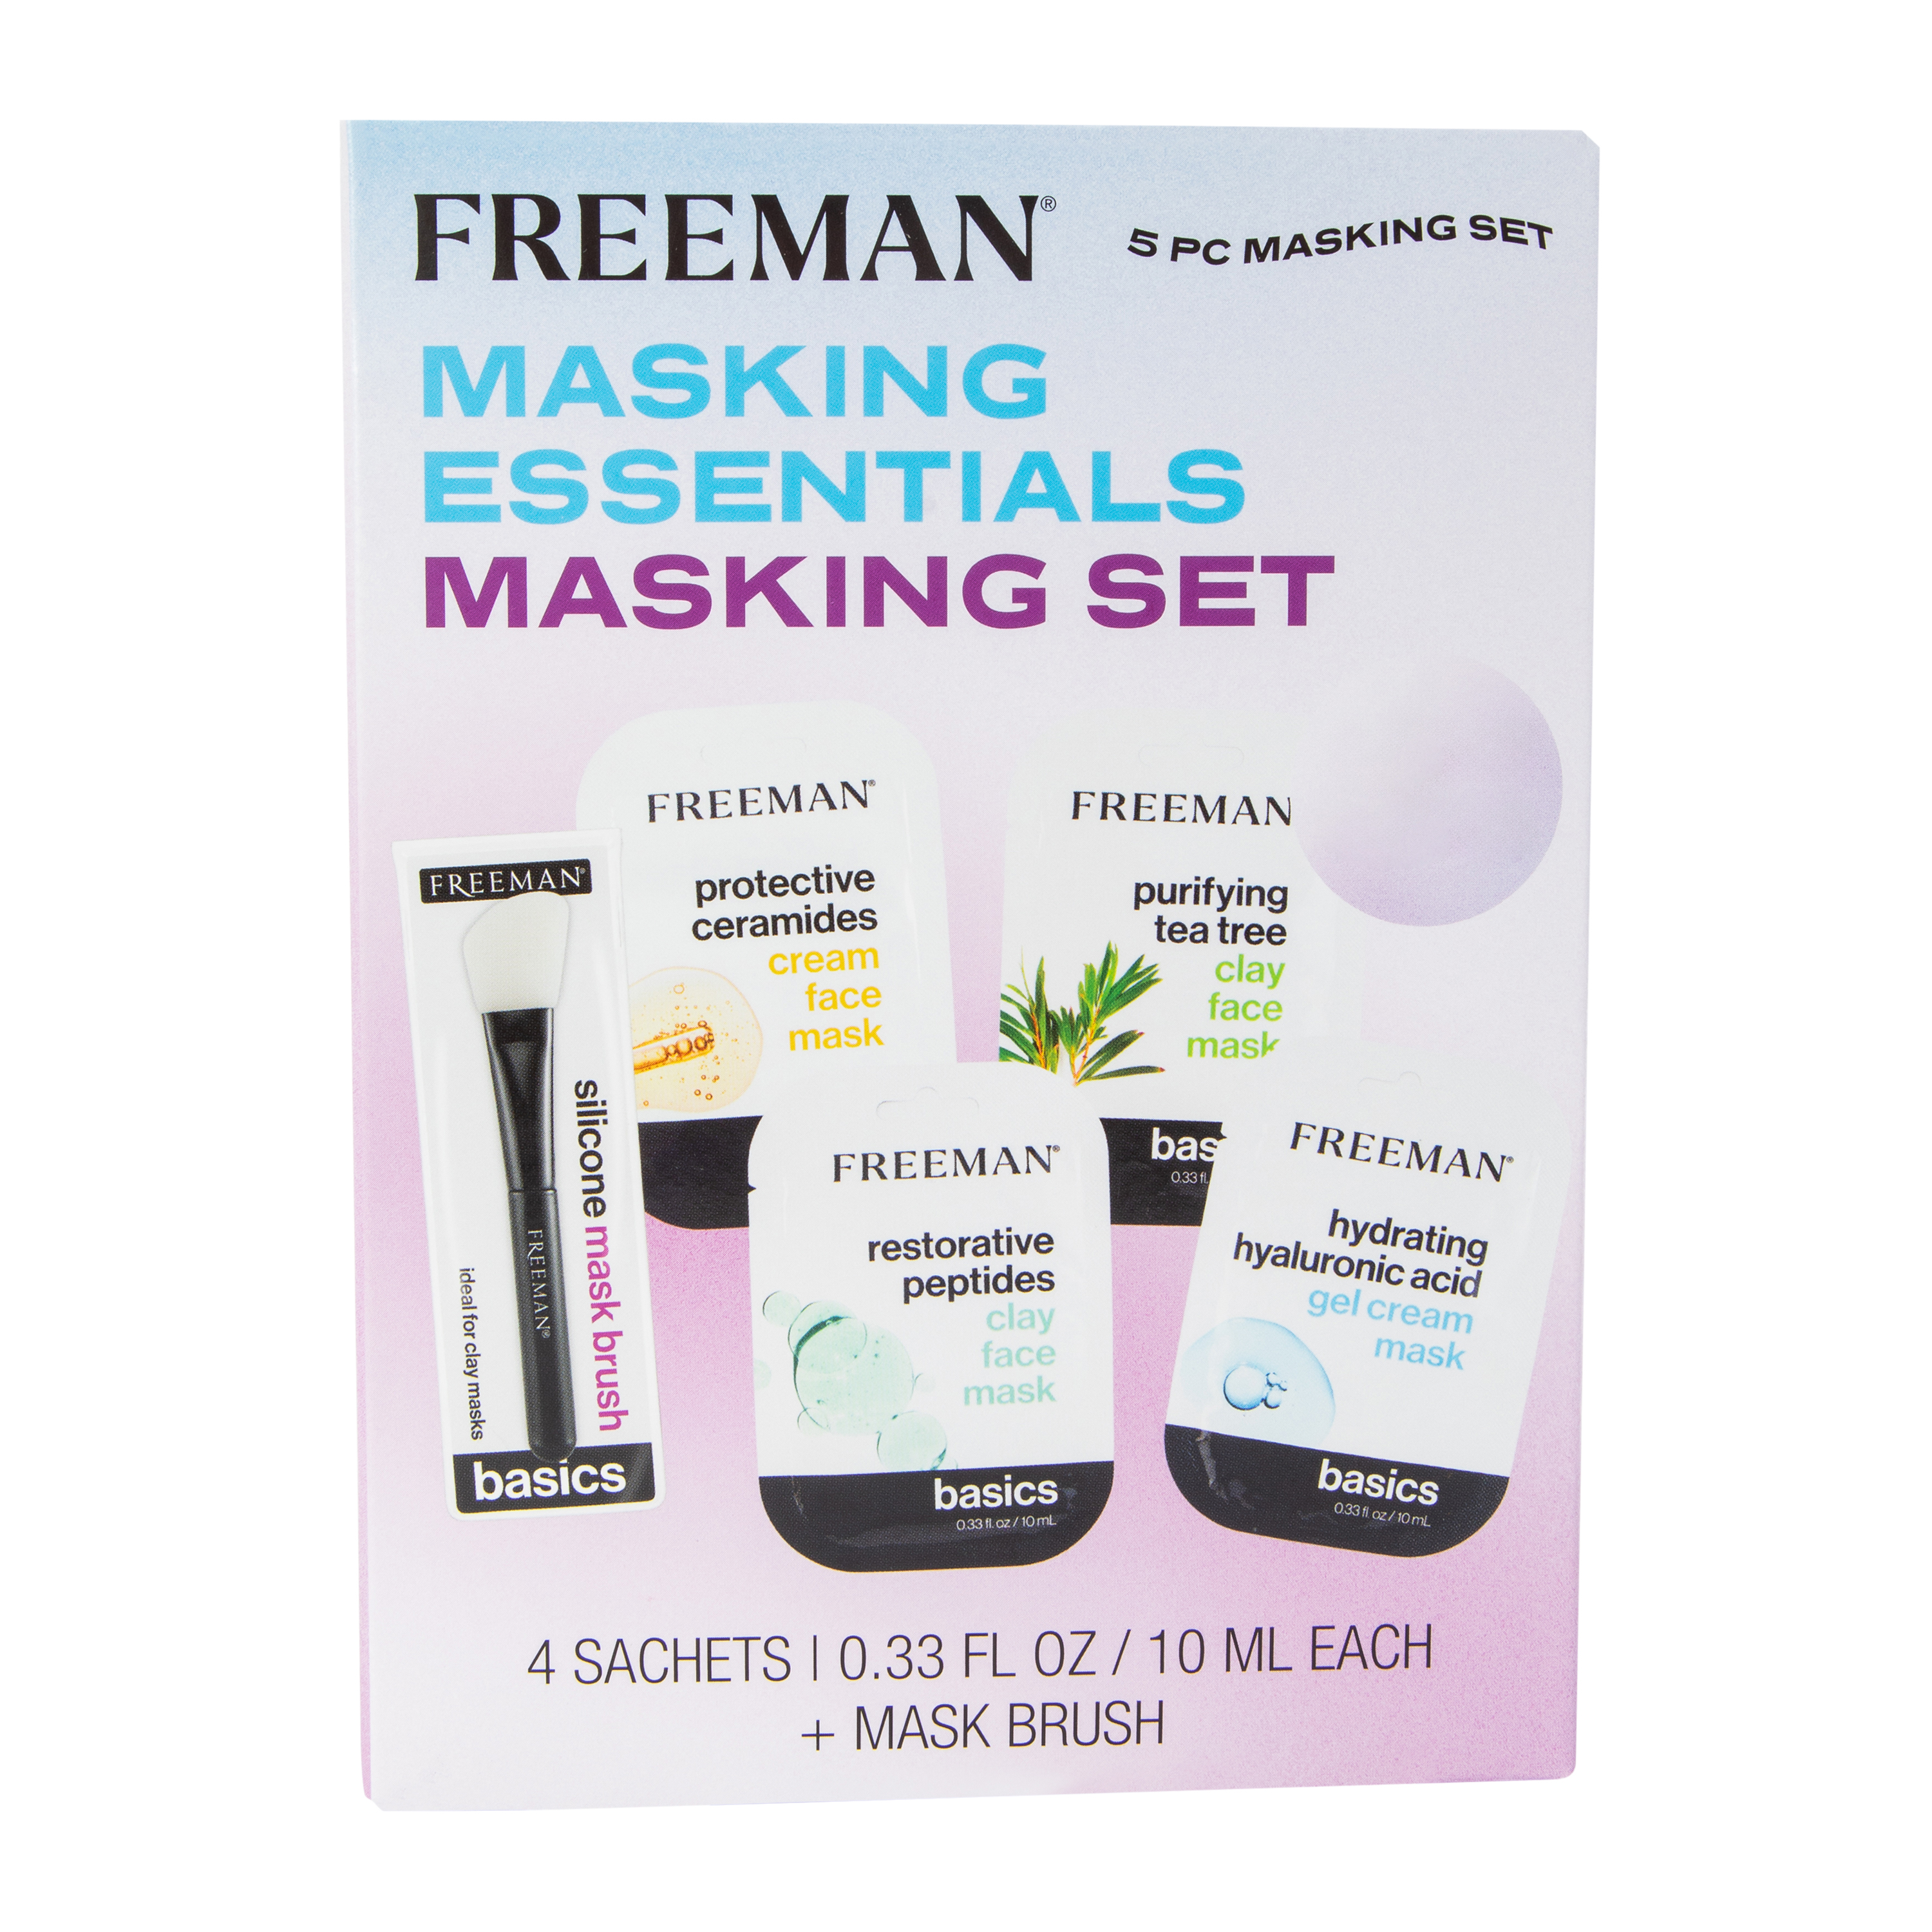 Freeman® Masking Essentials Masking Set 5-Piece